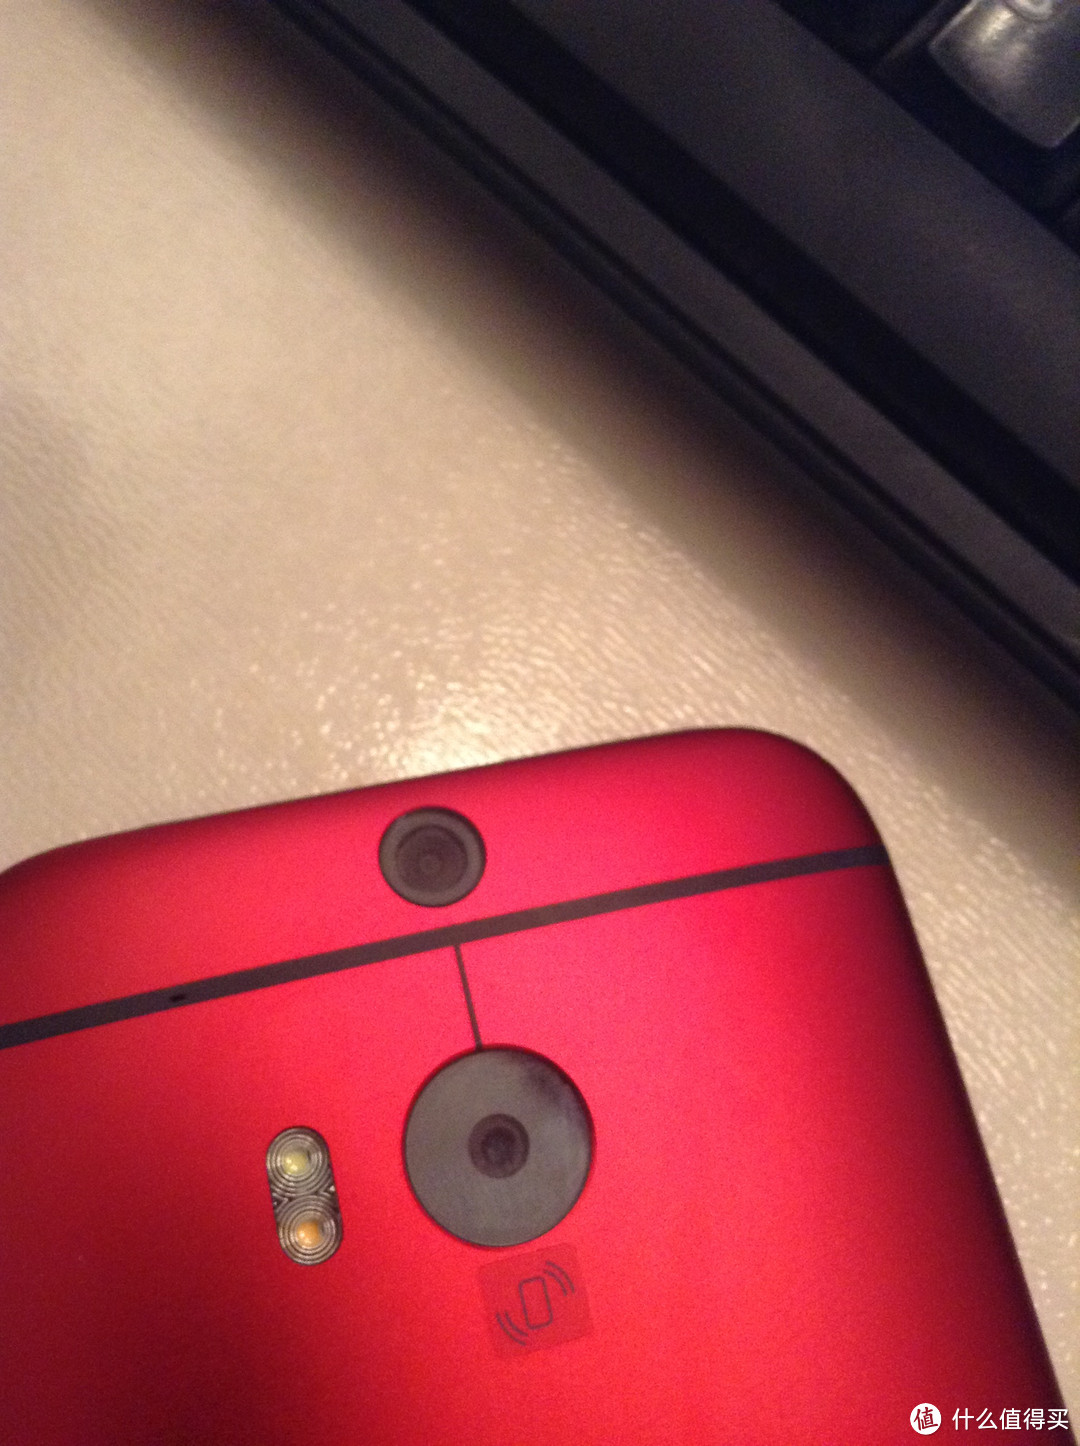 骚骚骚红色：HTC One M8 双卡双待联通版